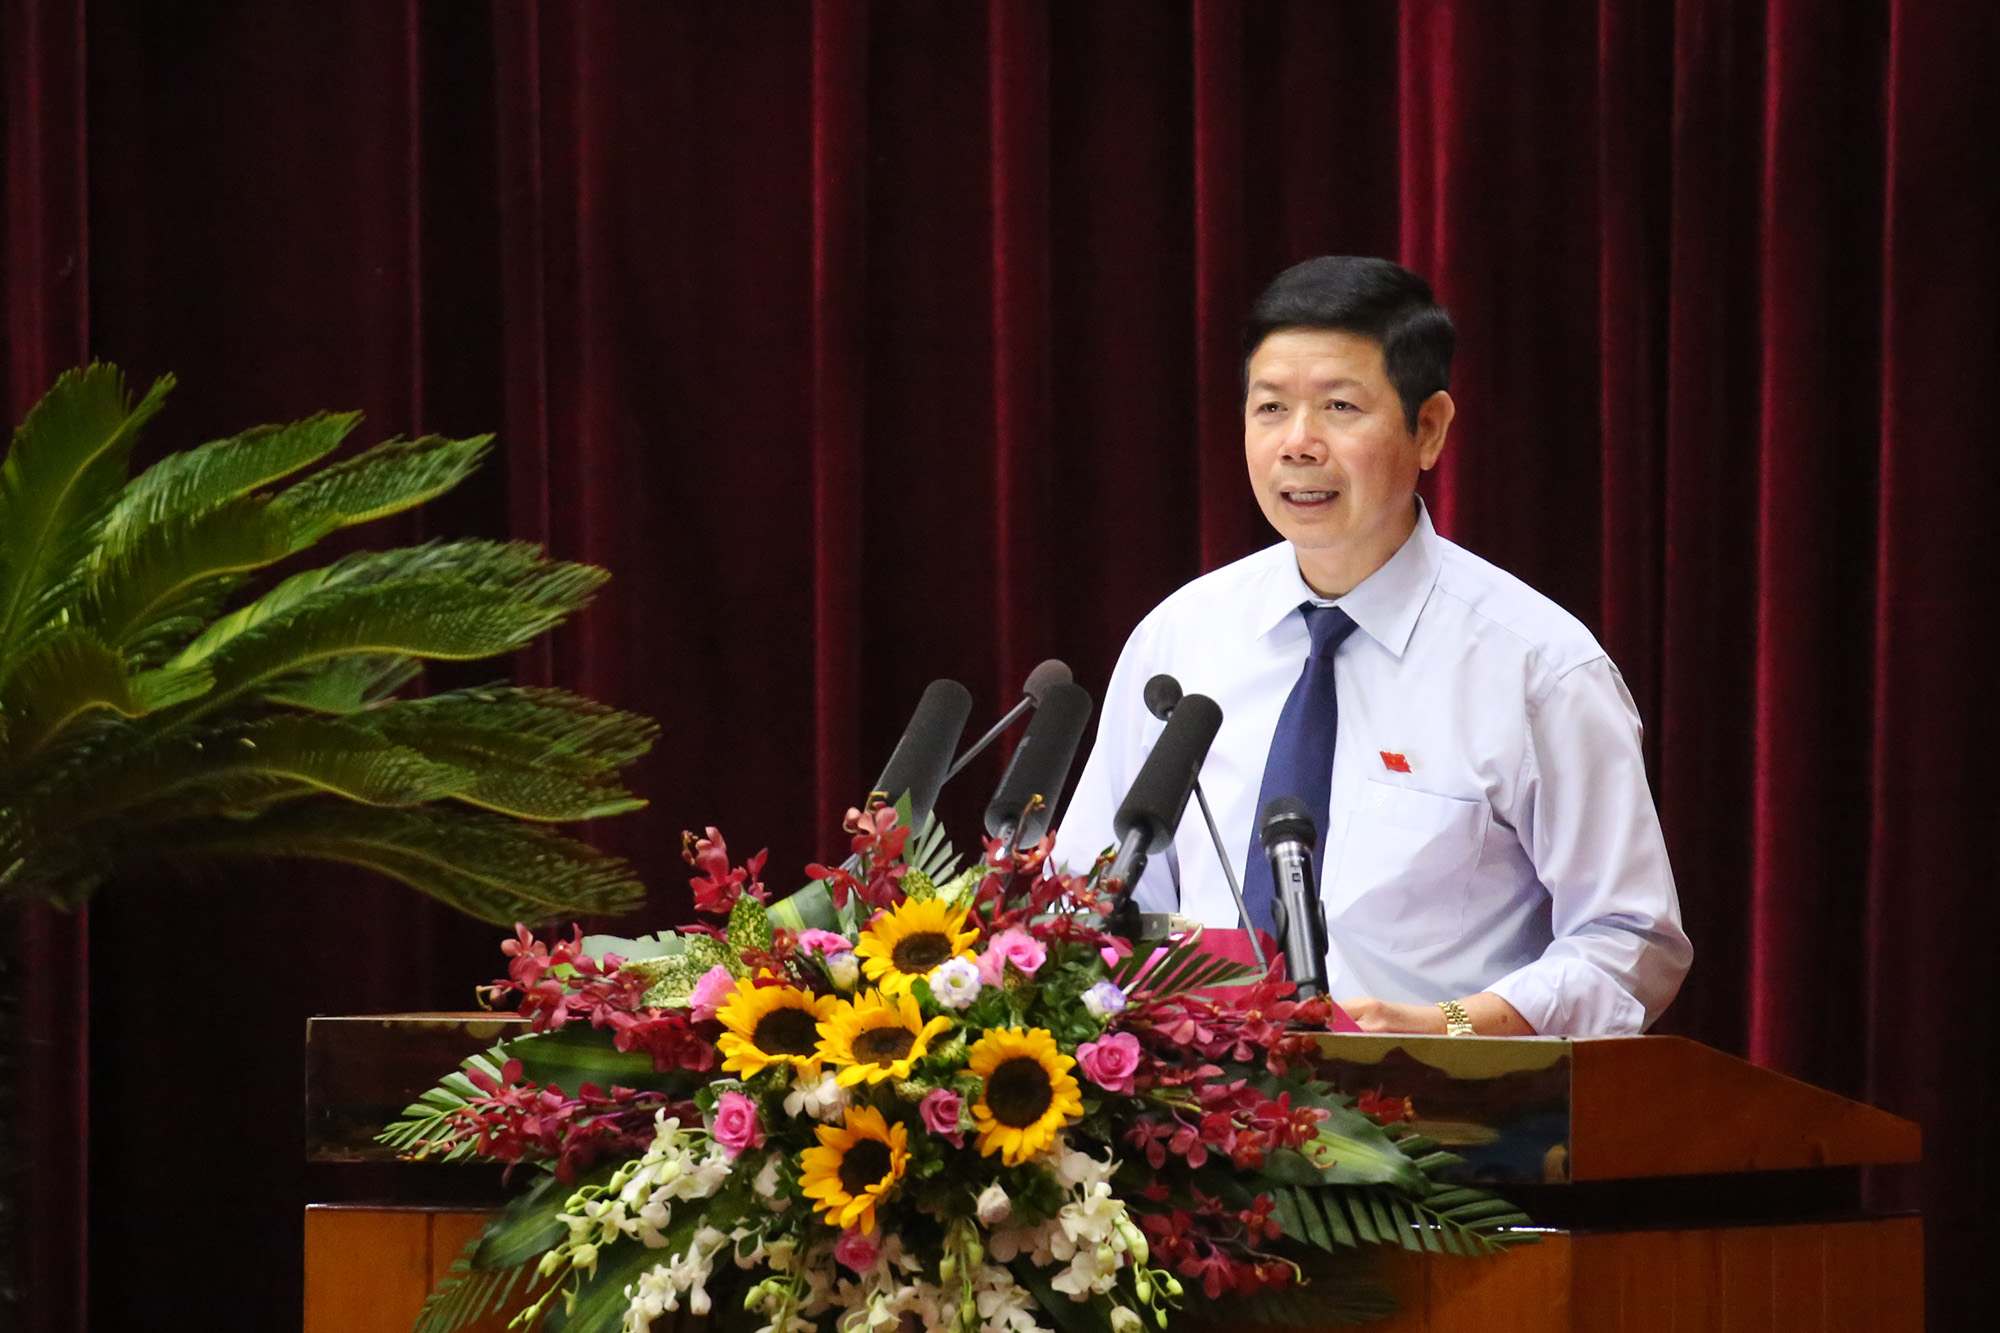 Đại biểu Vũ Thành Long, Tổ đại biểu Đông Triều, tham luận giải pháp cơ bản đưa các xã đạt chuẩn NTM.